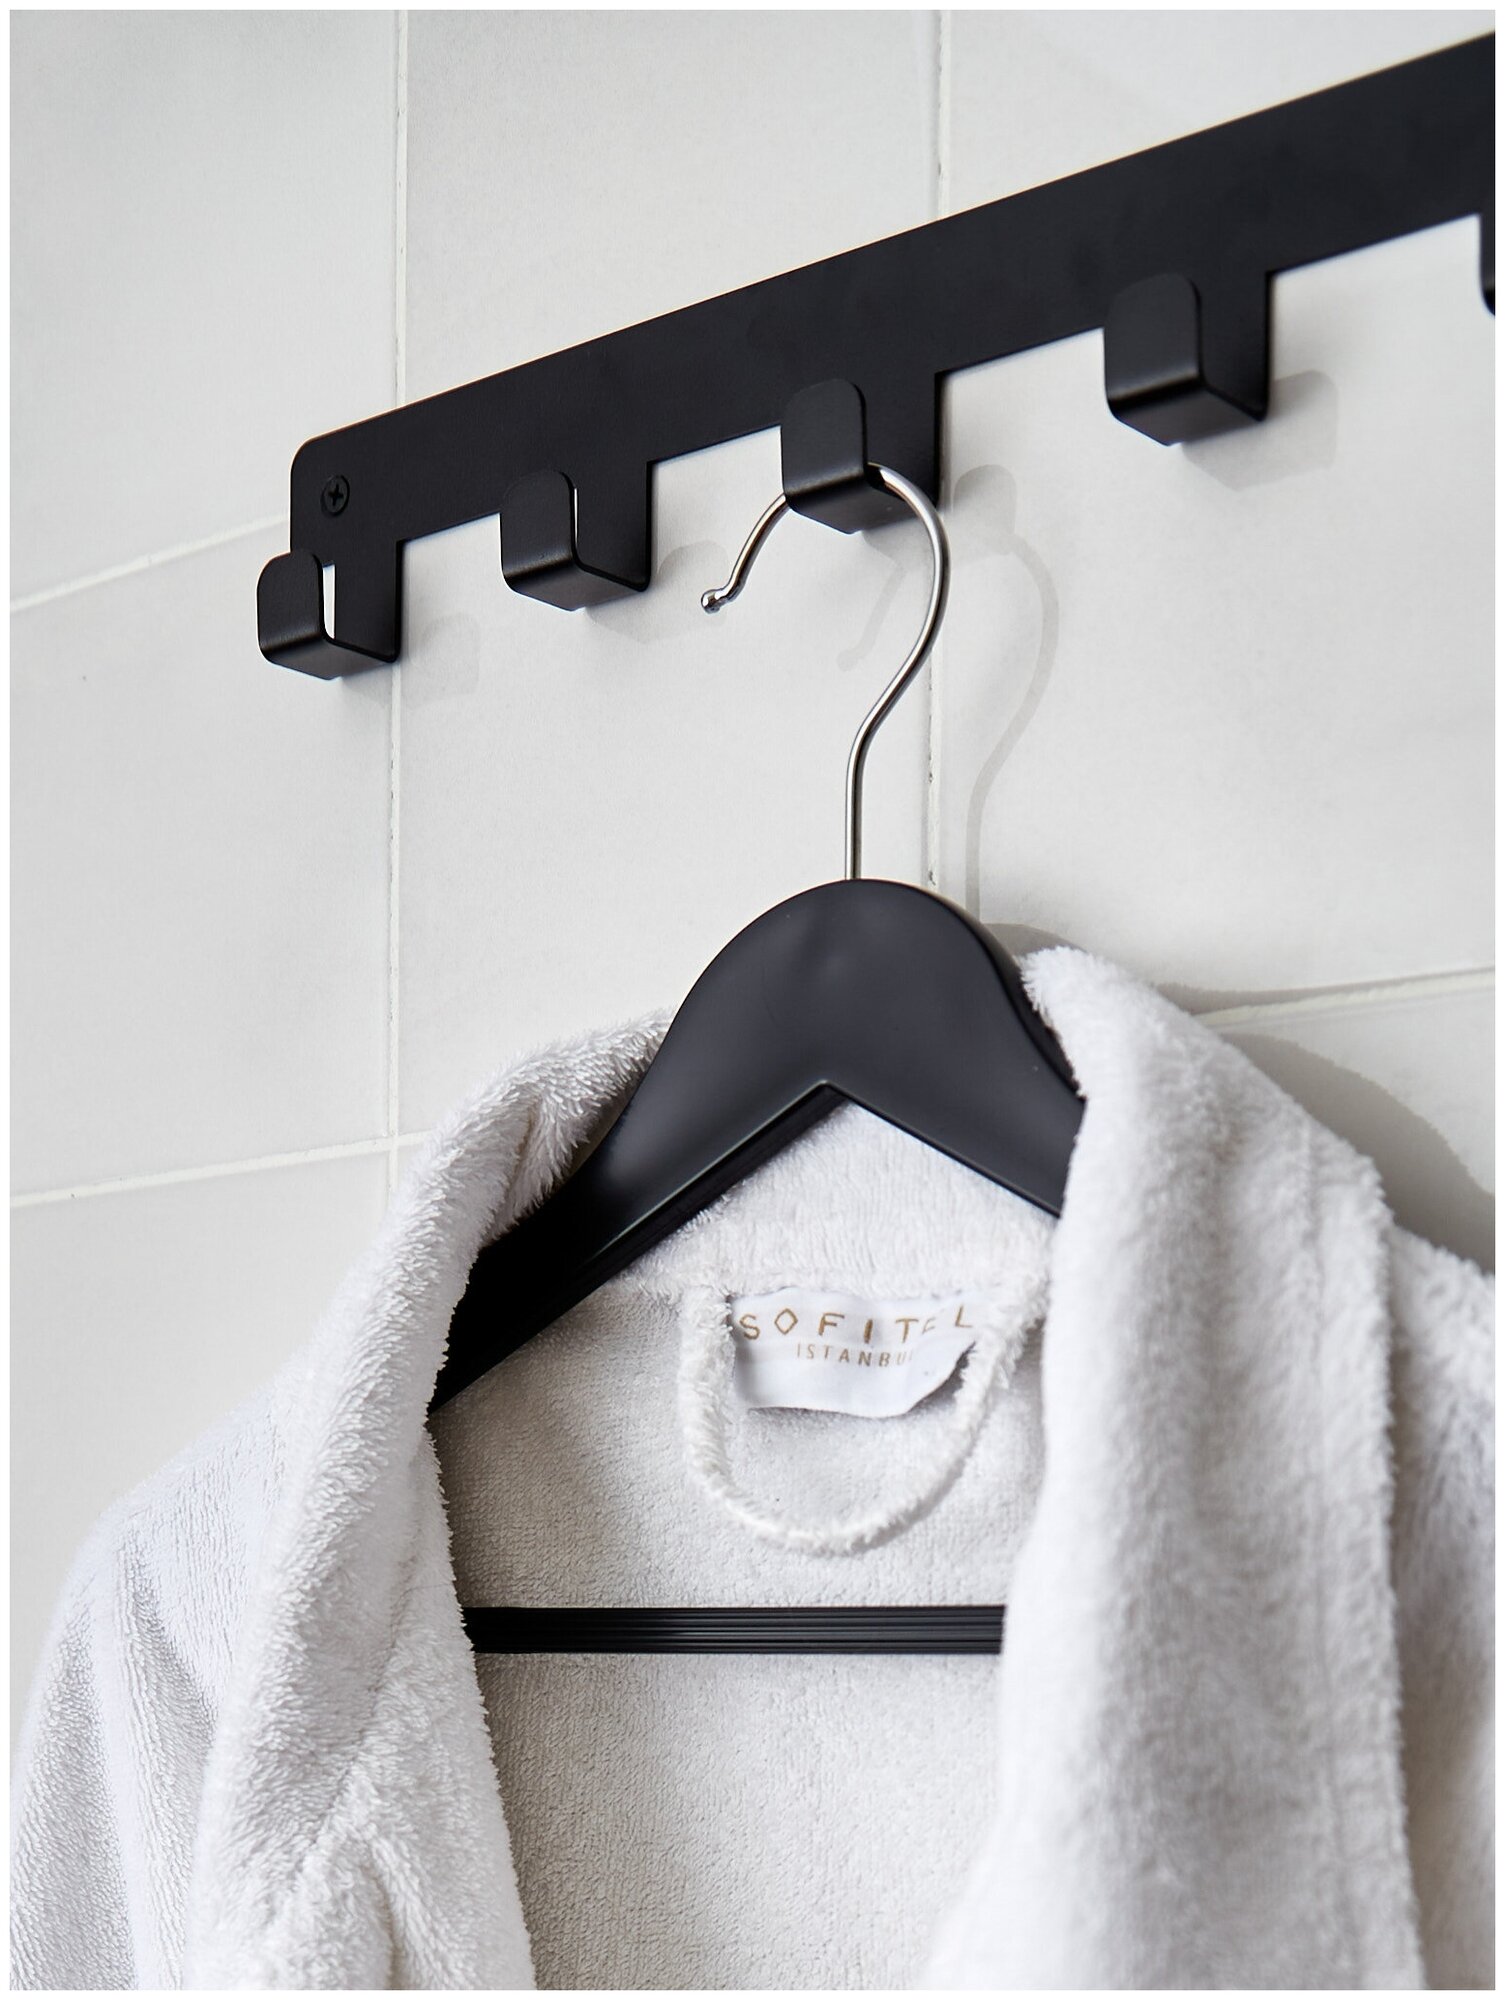 Вешалки-плечики для одежды пластик под дерево с перекладиной, цвет черный, 44 см, комплект 5 штук